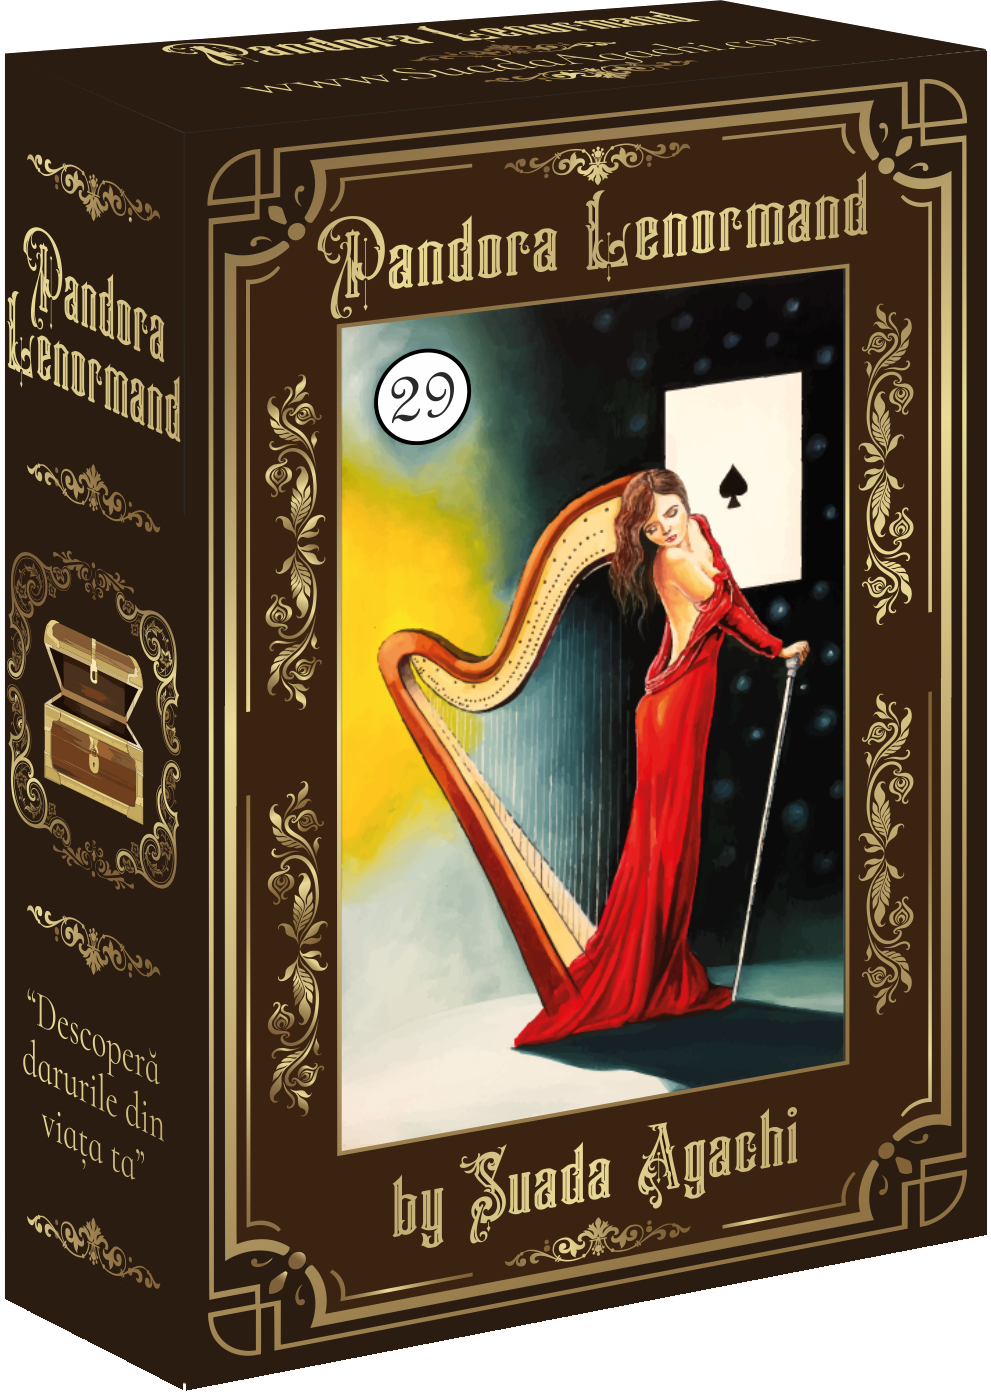 Pandora Lenormand - Suada Agachi